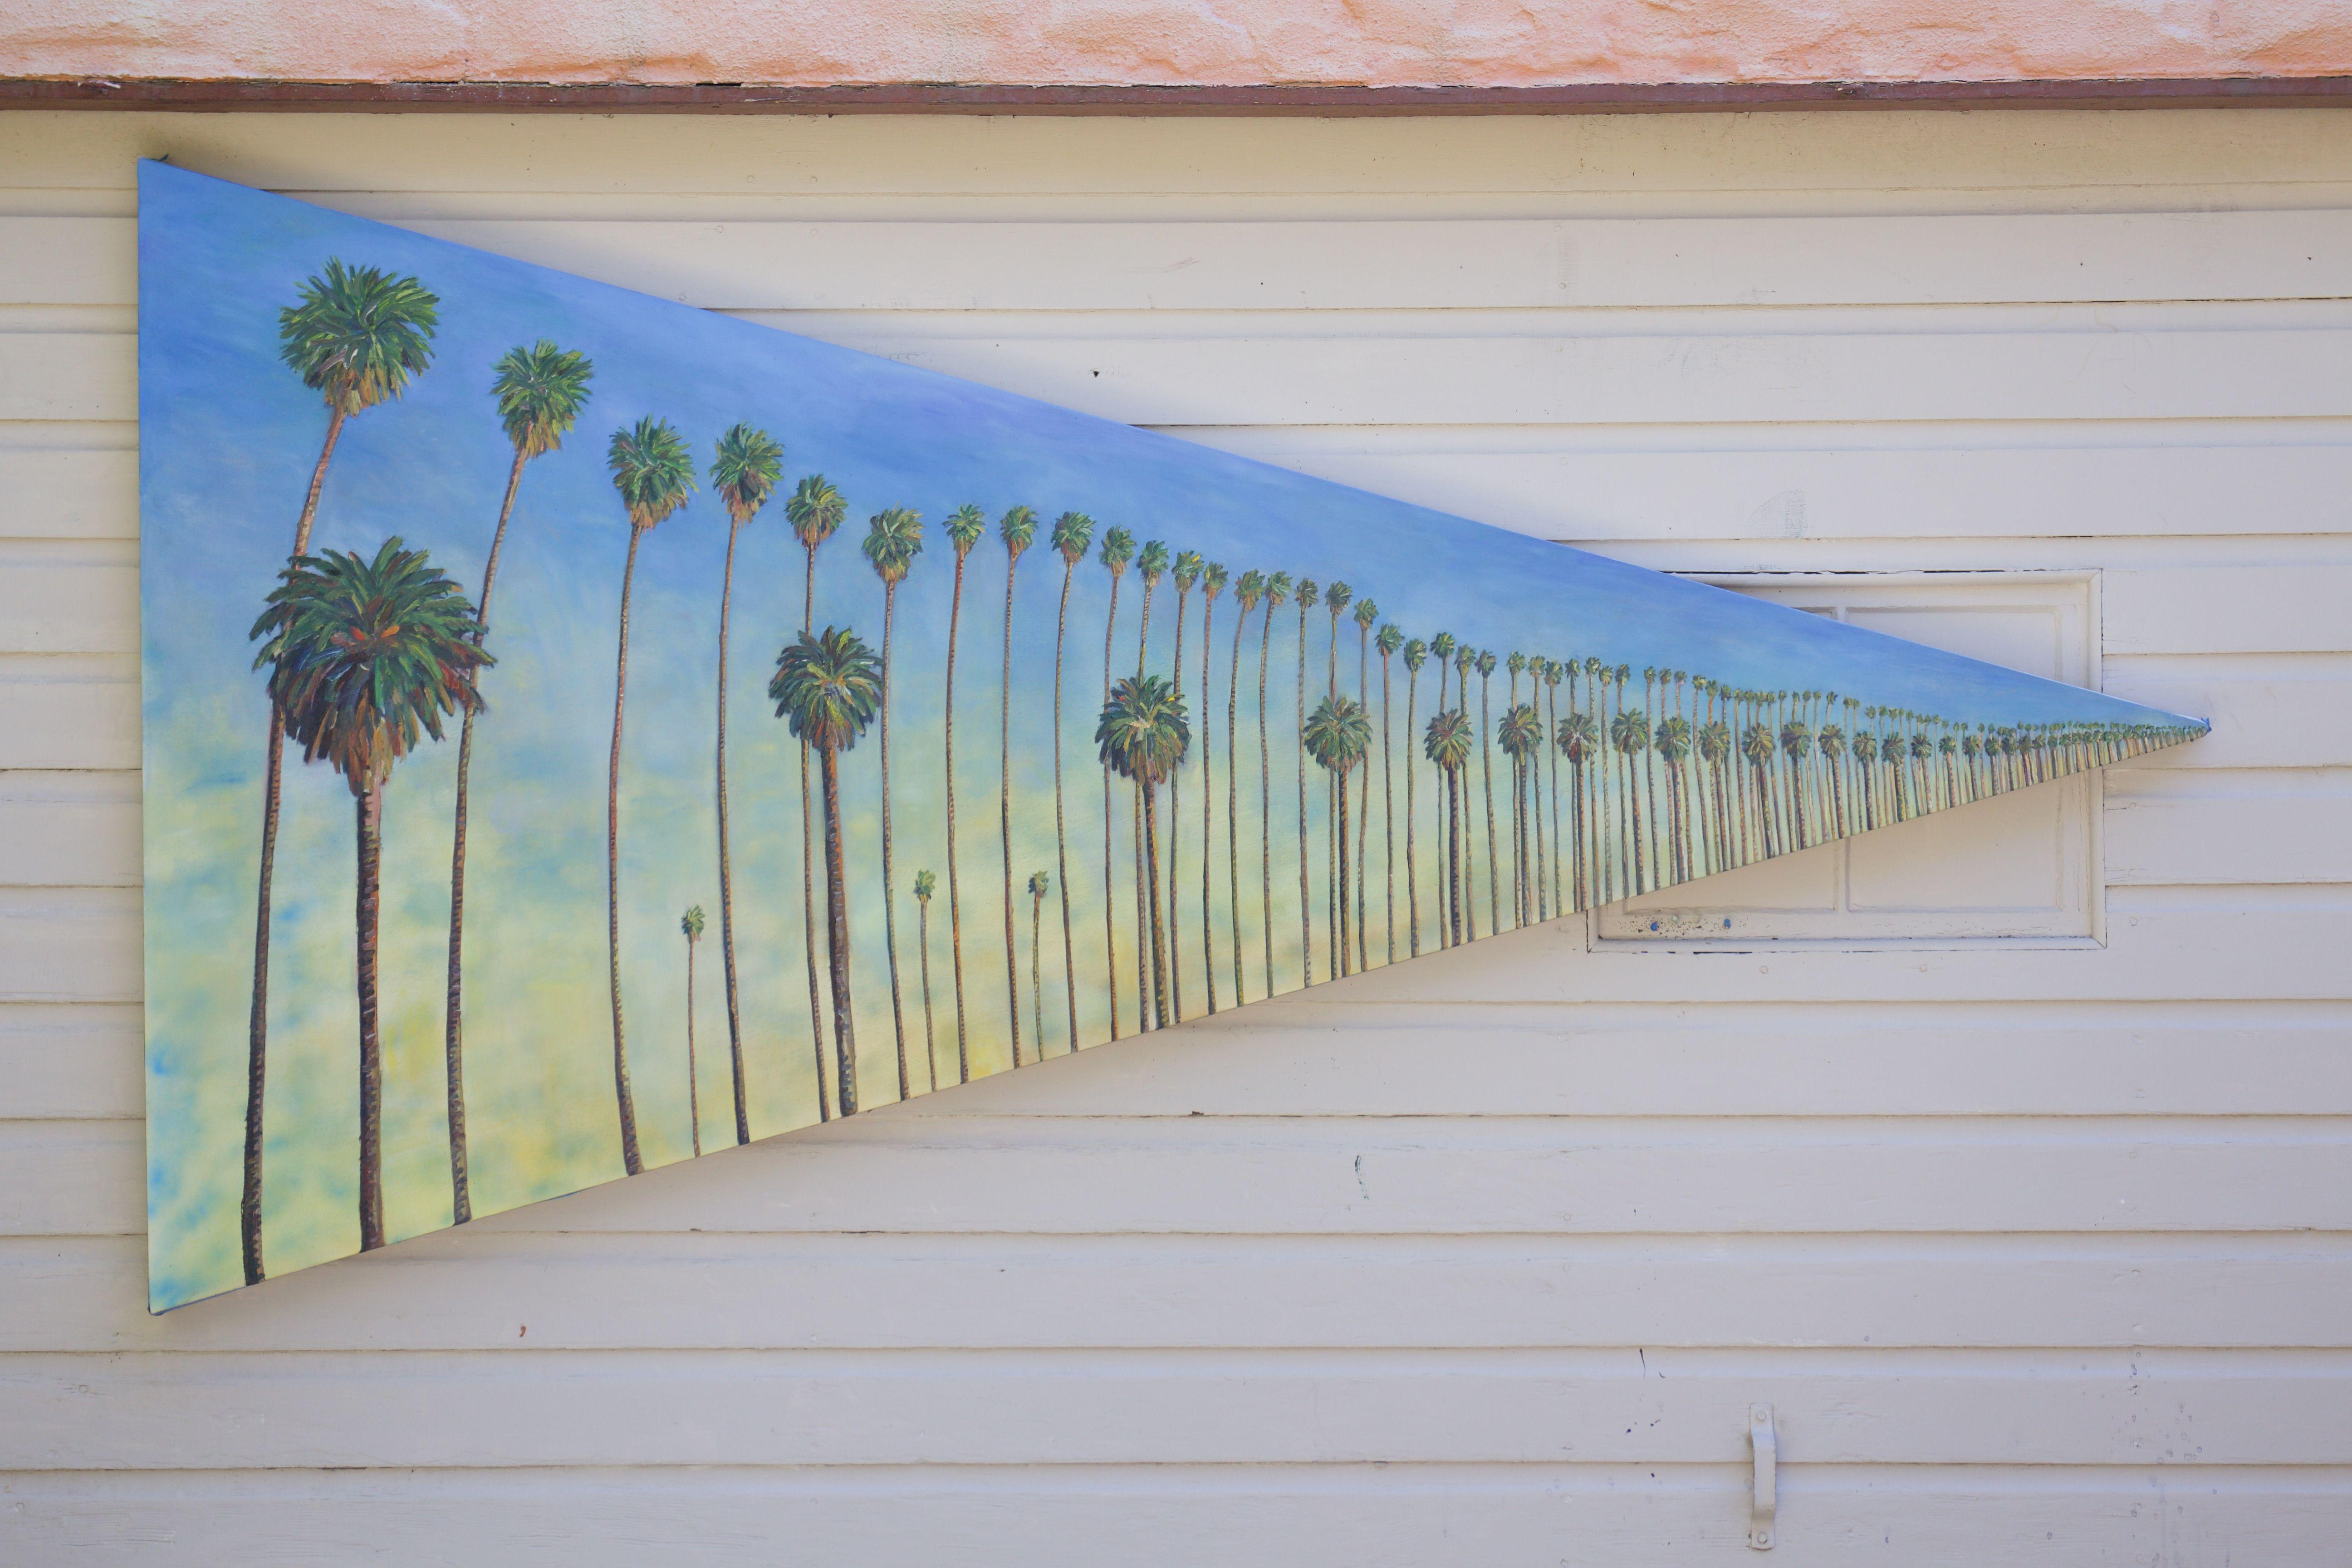 Landscape Painting John Kilduff - Peinture, huile sur toile, perspective de palmier numéro 4